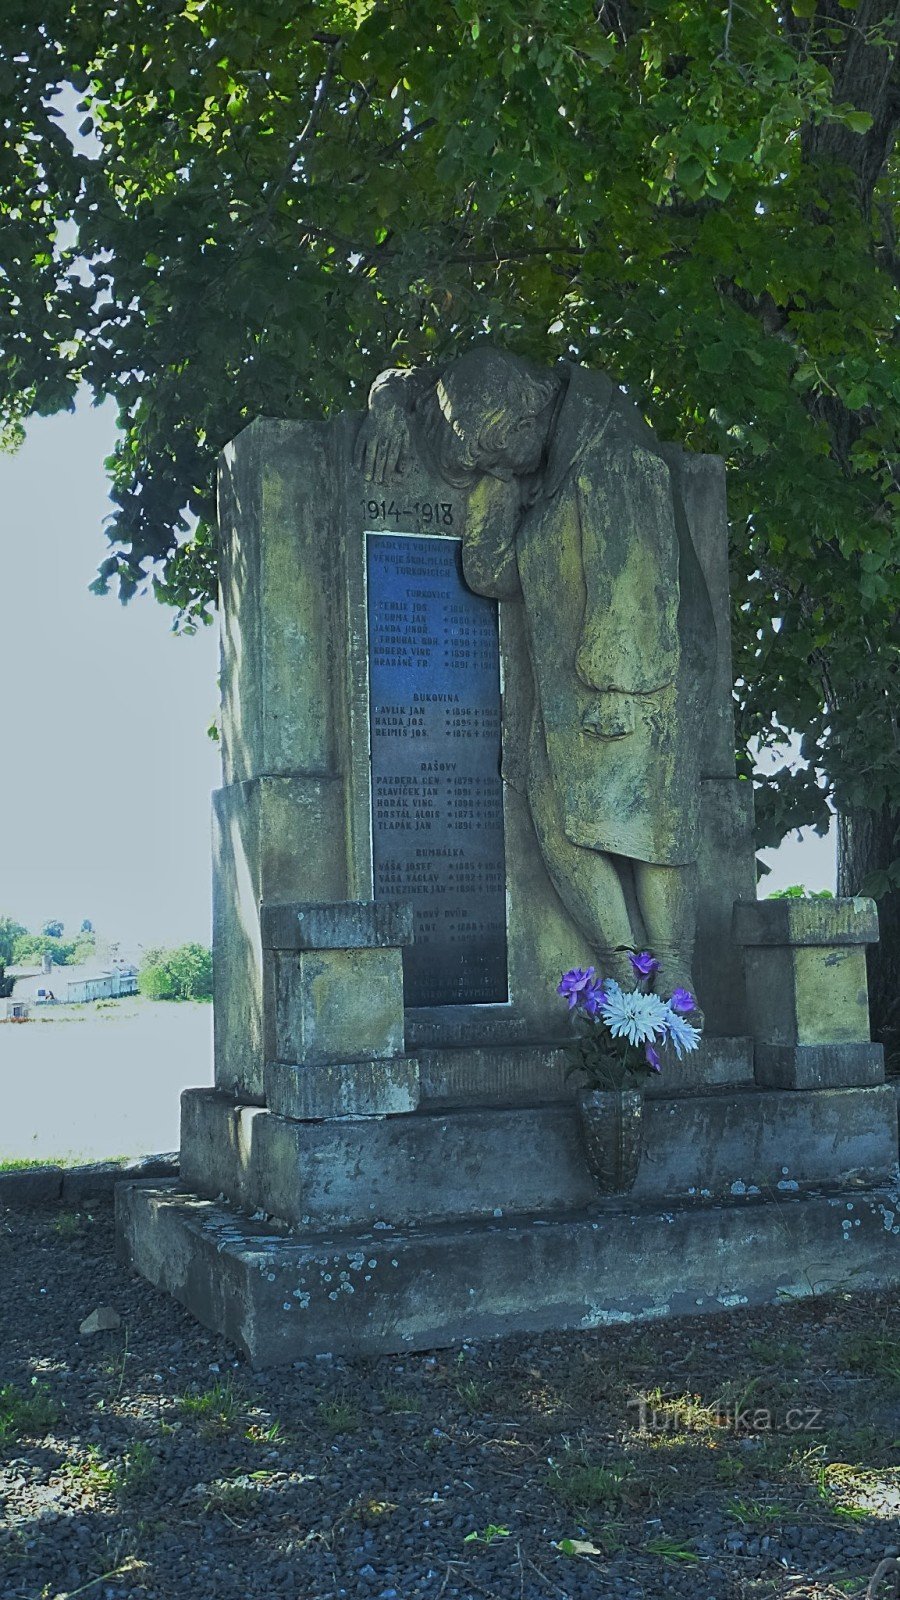 19 namn på fallna soldater från de omgivande byarna är ingraverade på monumentet